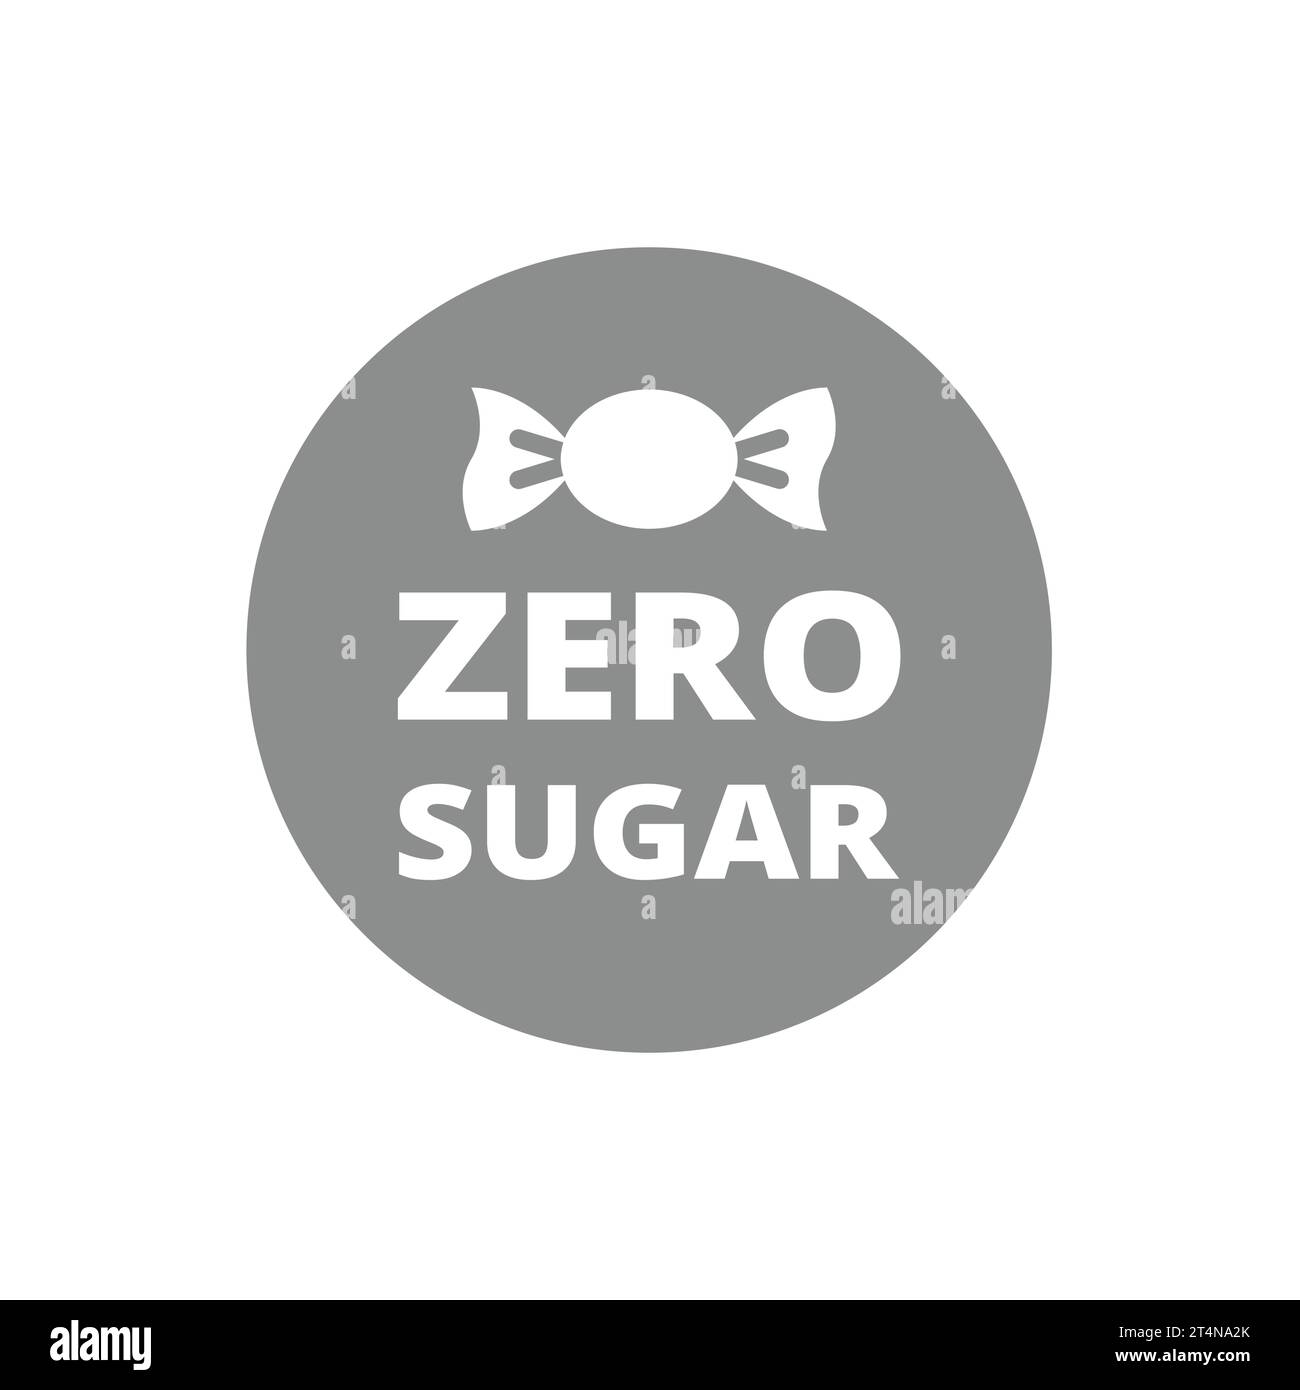 Zero sugar vector label. Sugar free with candy icon. Stock Vector